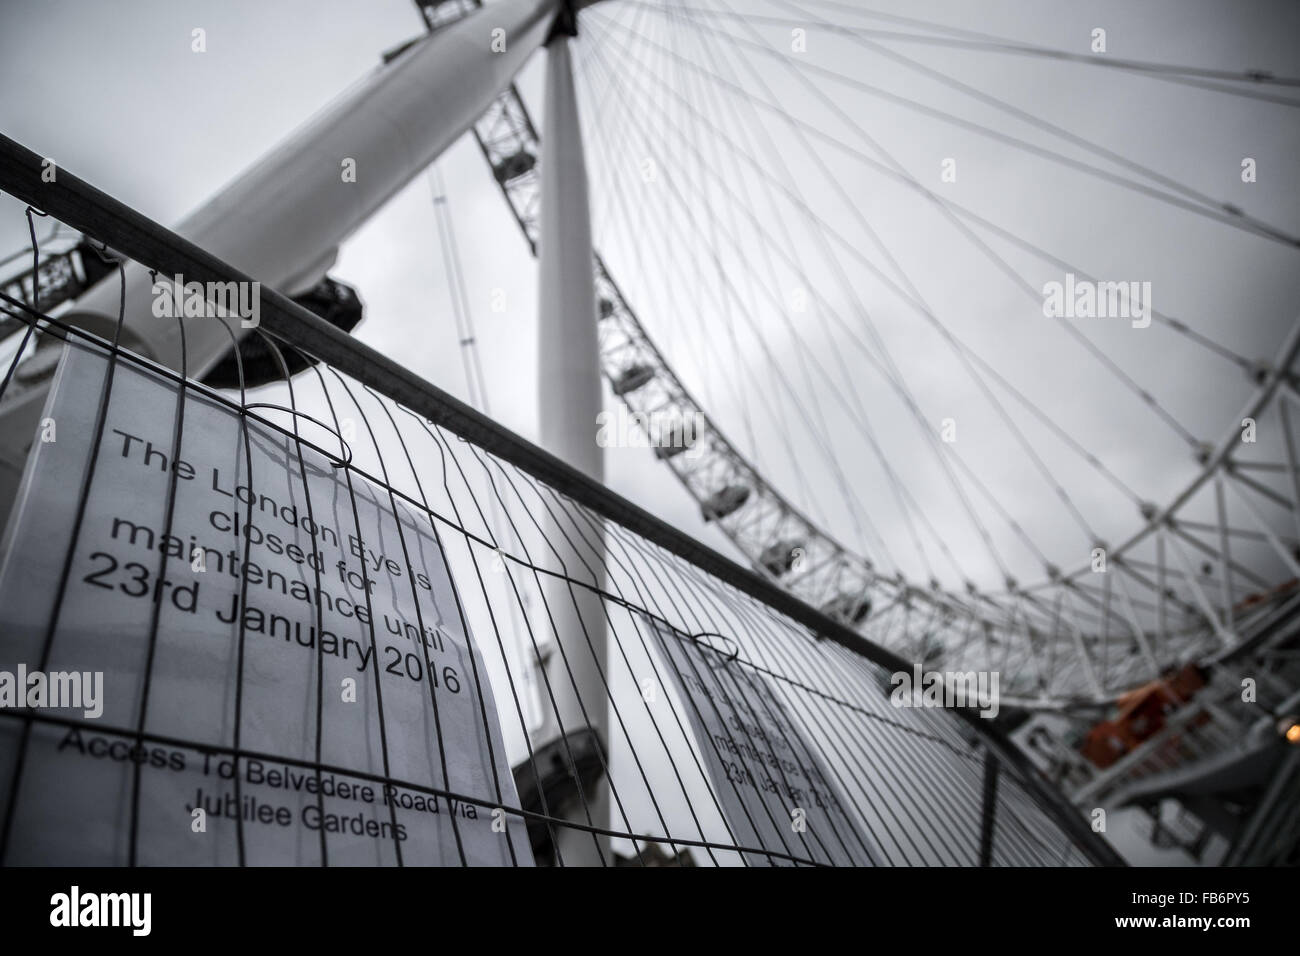 Londra, Regno Unito. 11 gennaio, 2016. London Eye chiusa per manutenzione annuale fino al 23 gennaio Credito: Guy Corbishley/Alamy Live News Foto Stock